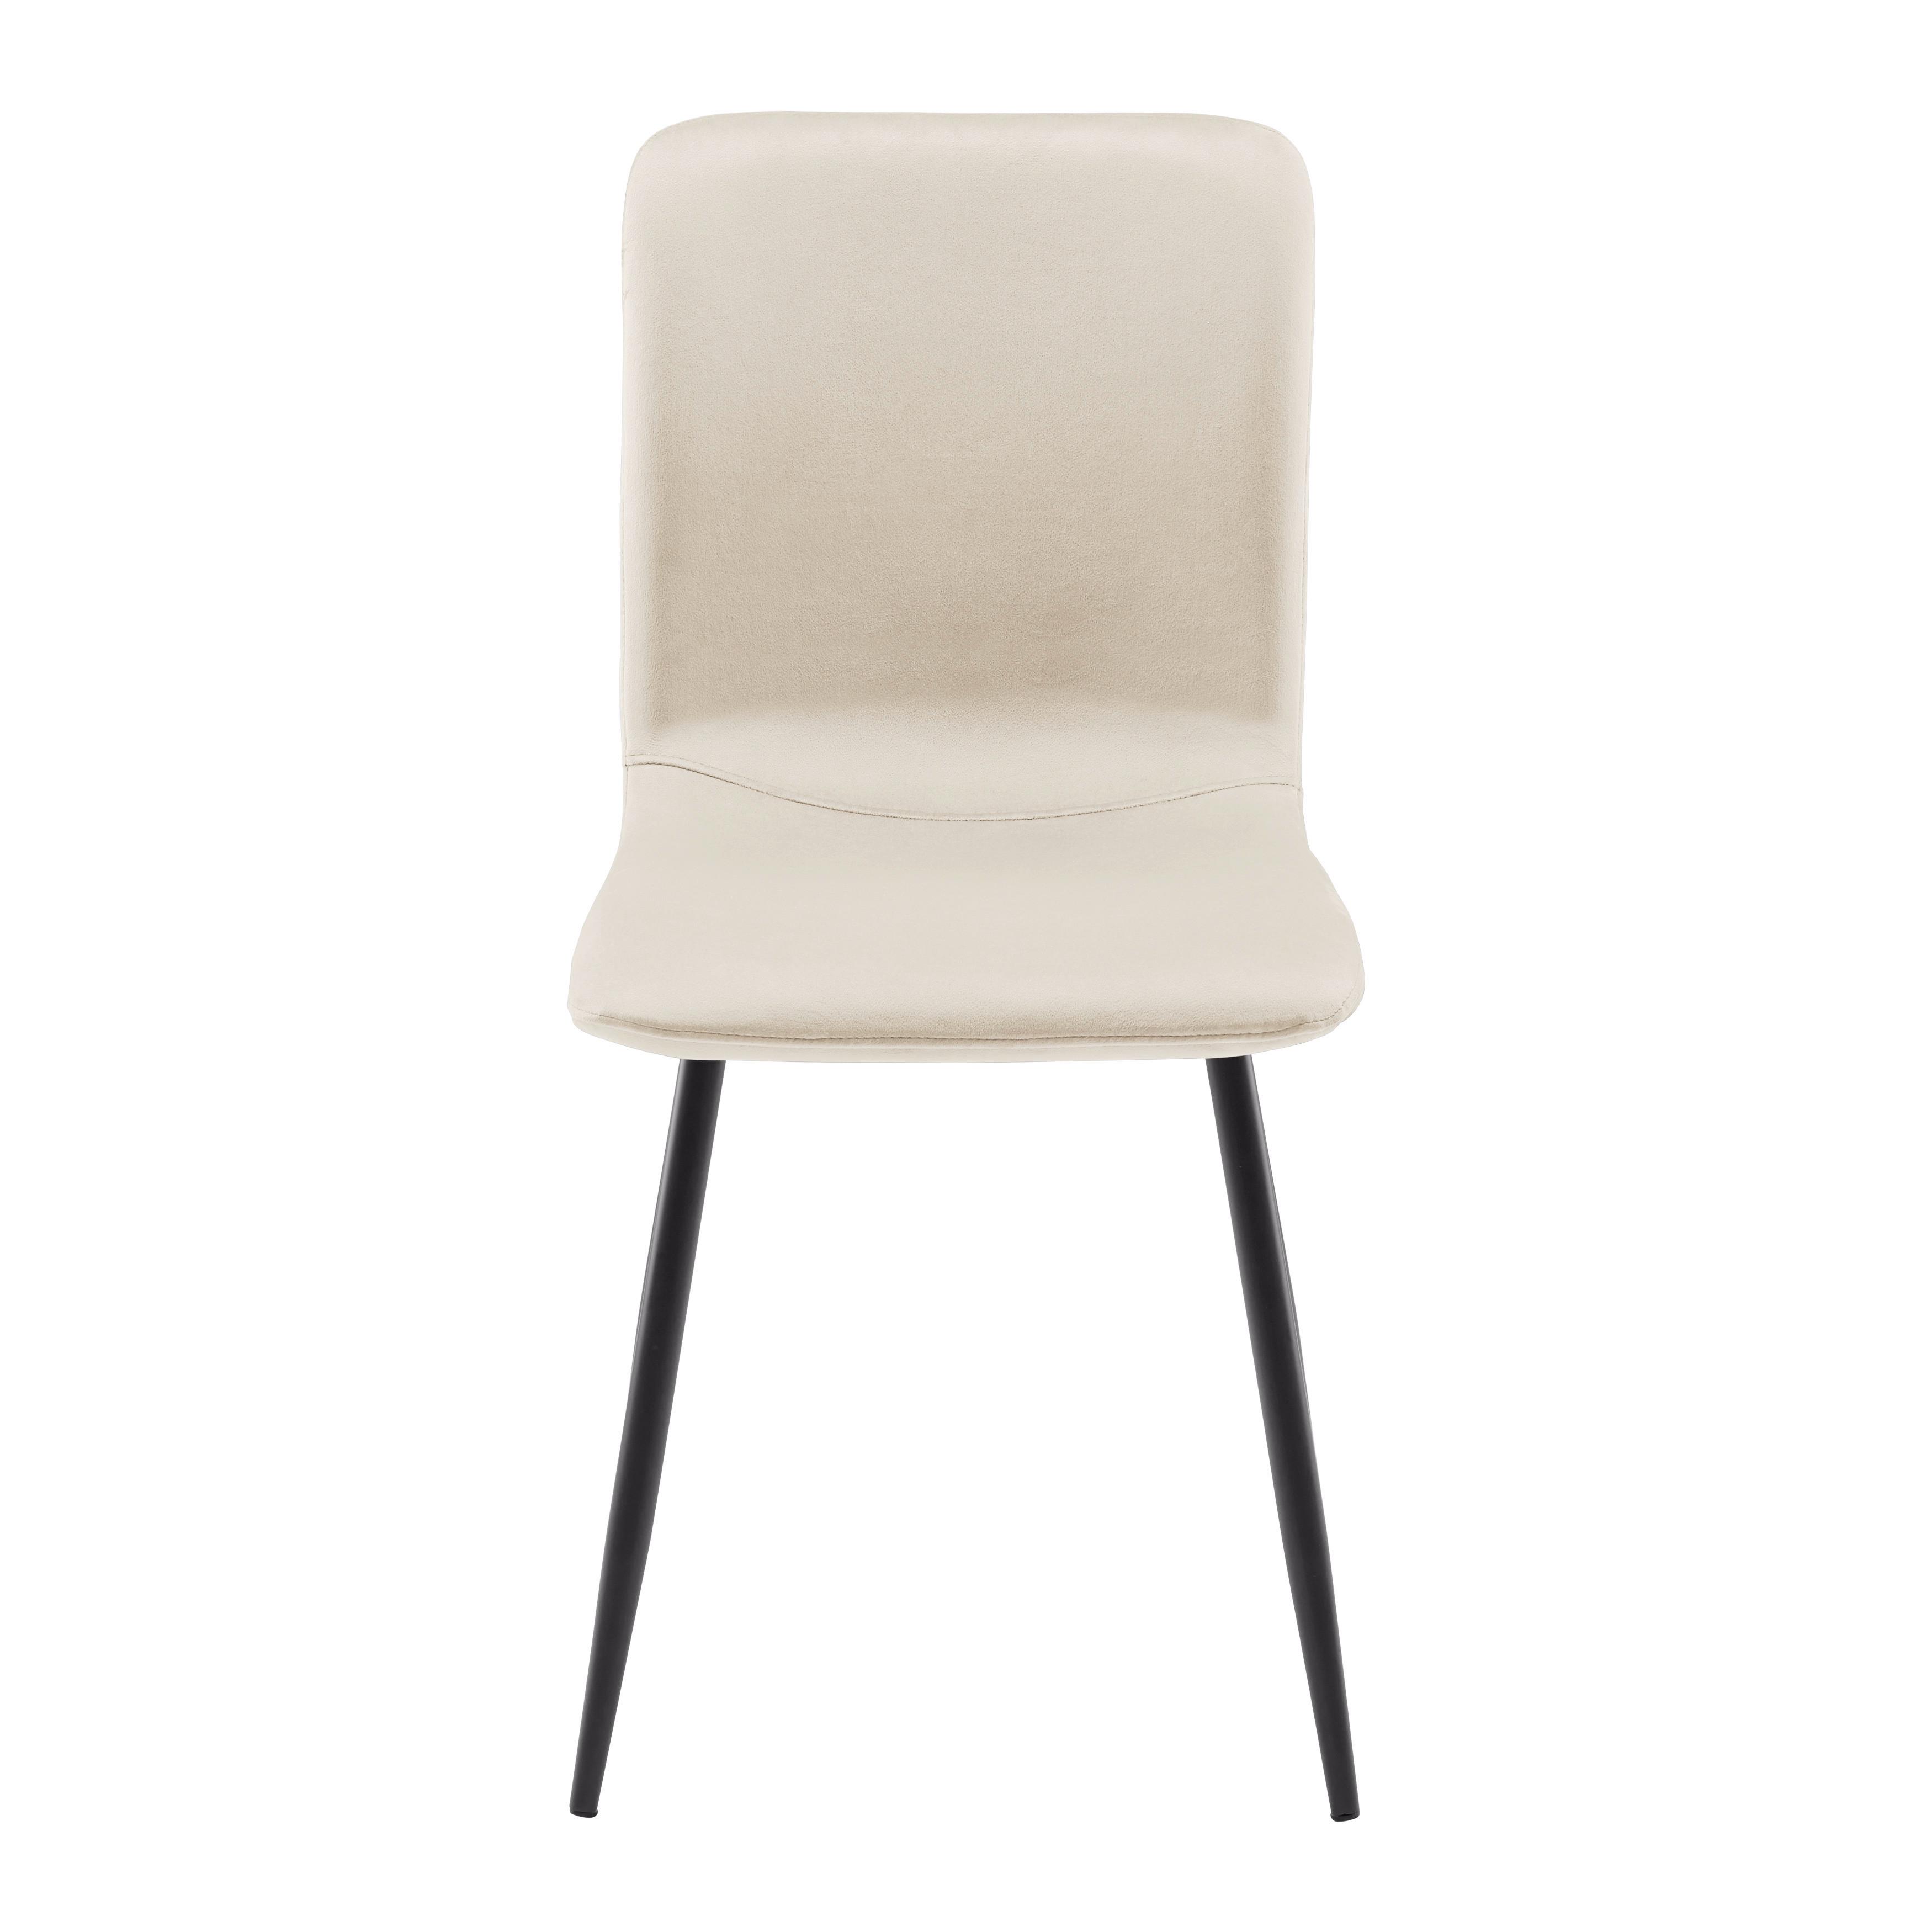 Moderní Jídelní Židle Elif Béžová - černá/béžová, Moderní, kov/textil (43/86/55cm) - P & B